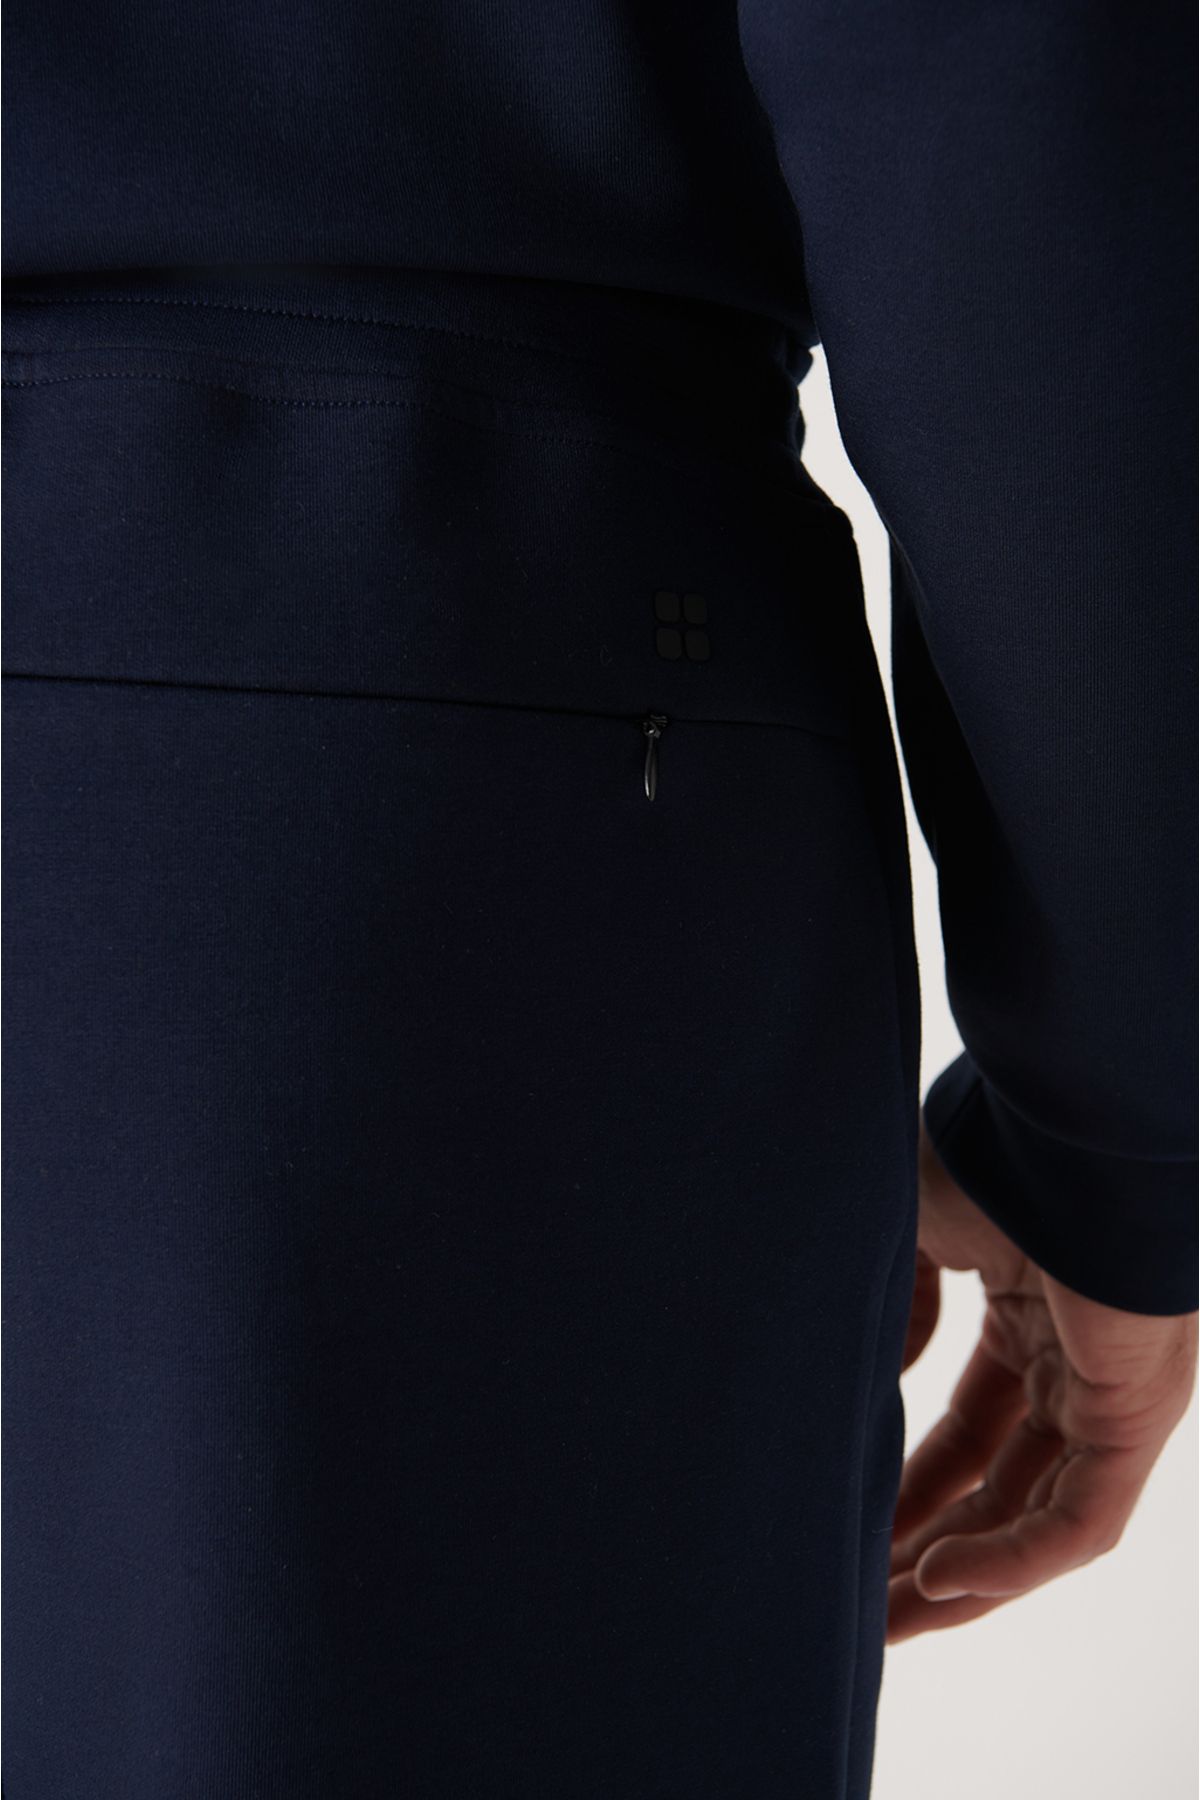 Avva لباس های آبی دریایی شش تایر لاستیکی پارچه ای با بافت نرم انعطاف پذیر